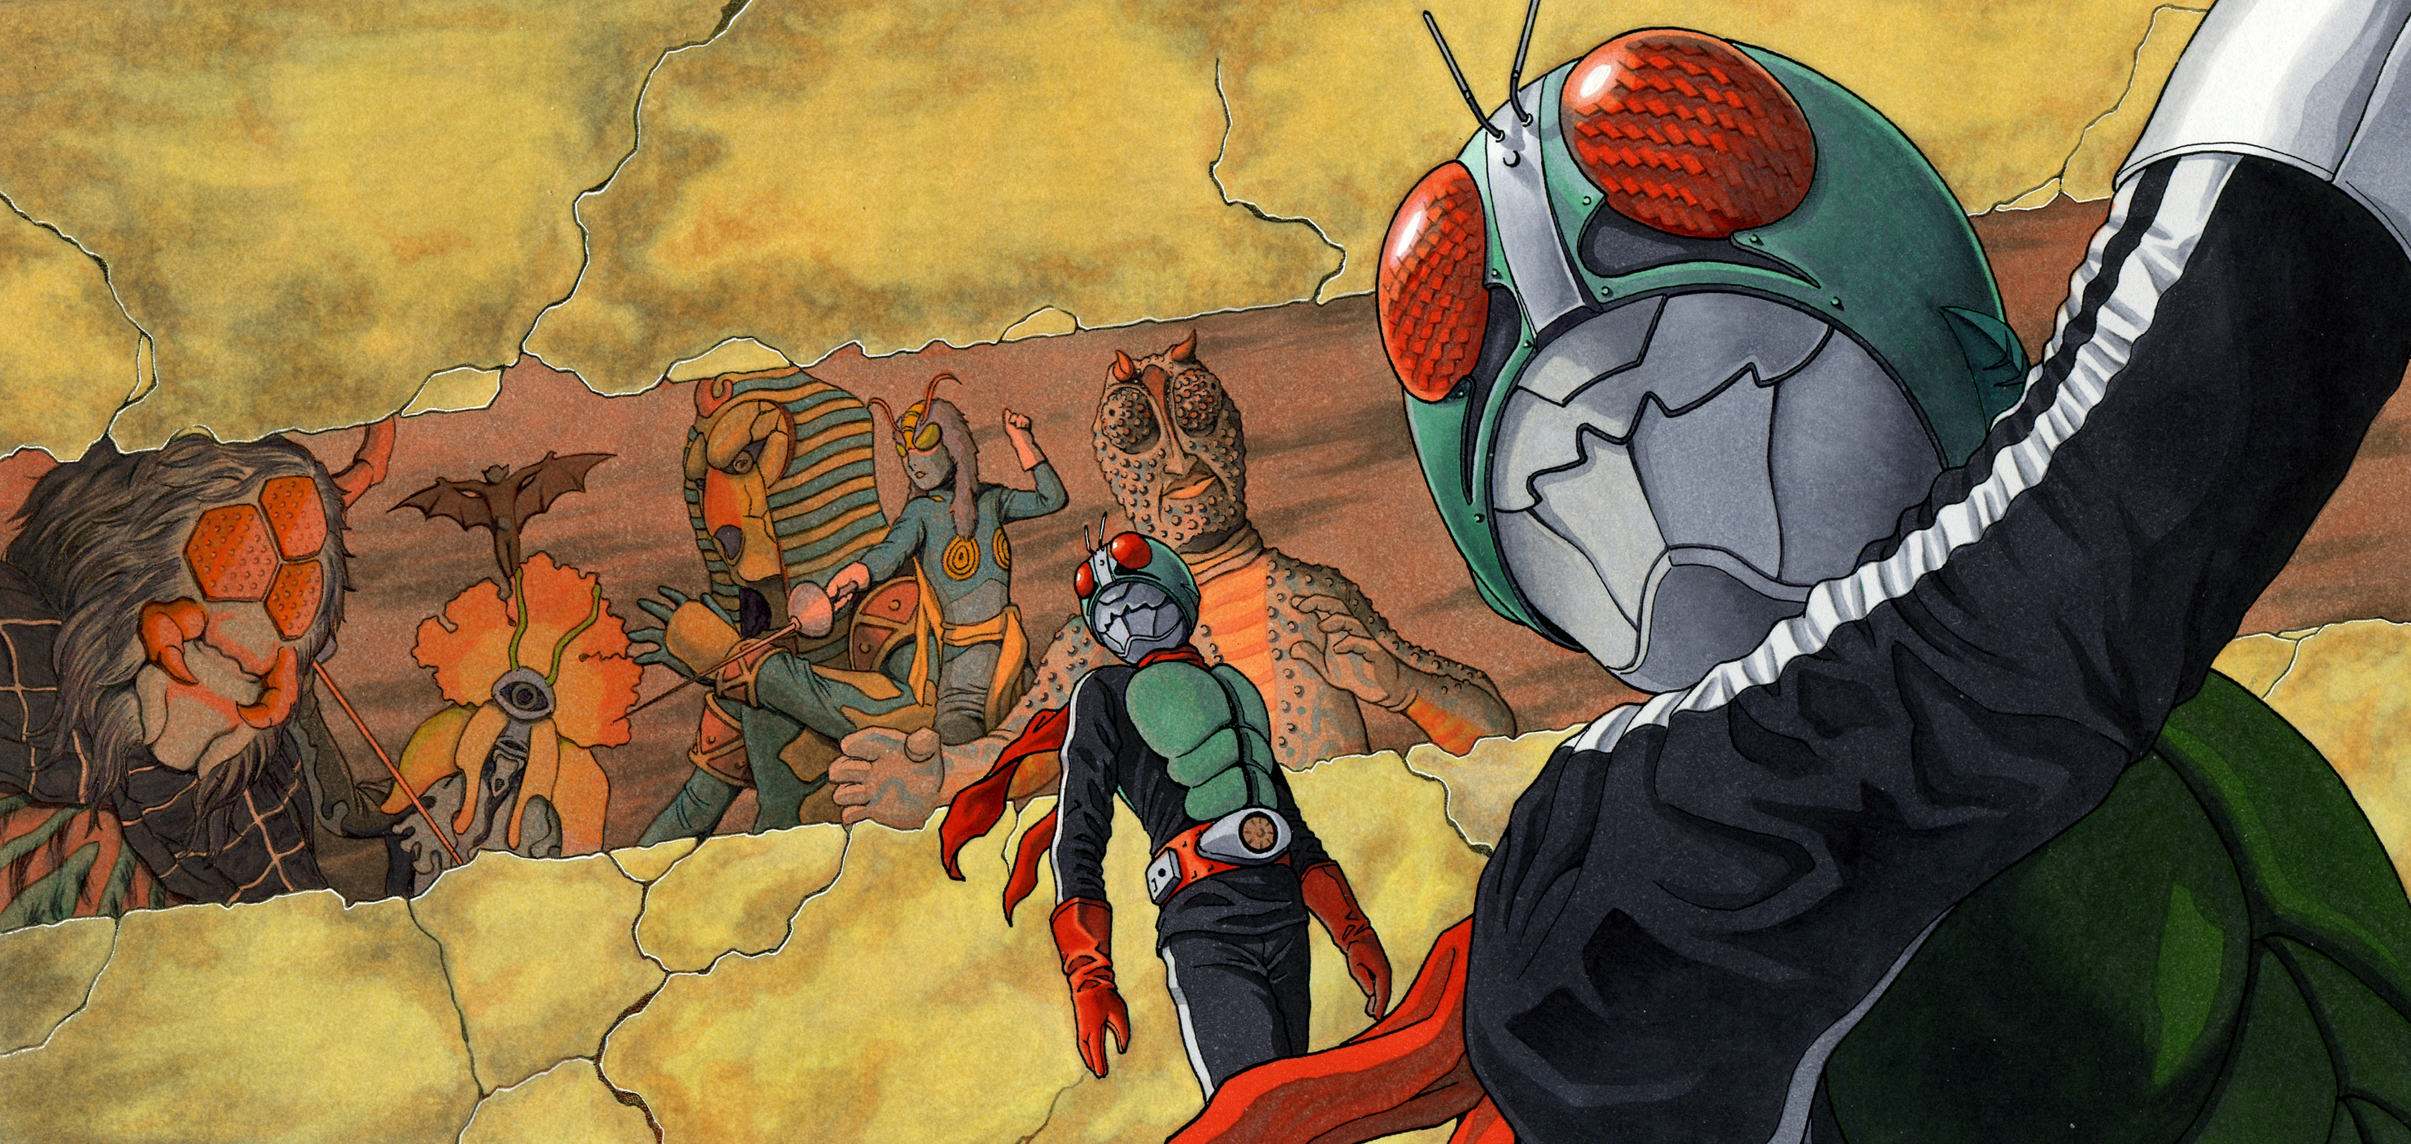 kamen rider wallpaper,hombre araña,personaje de ficción,dibujos animados,superhéroe,ficción